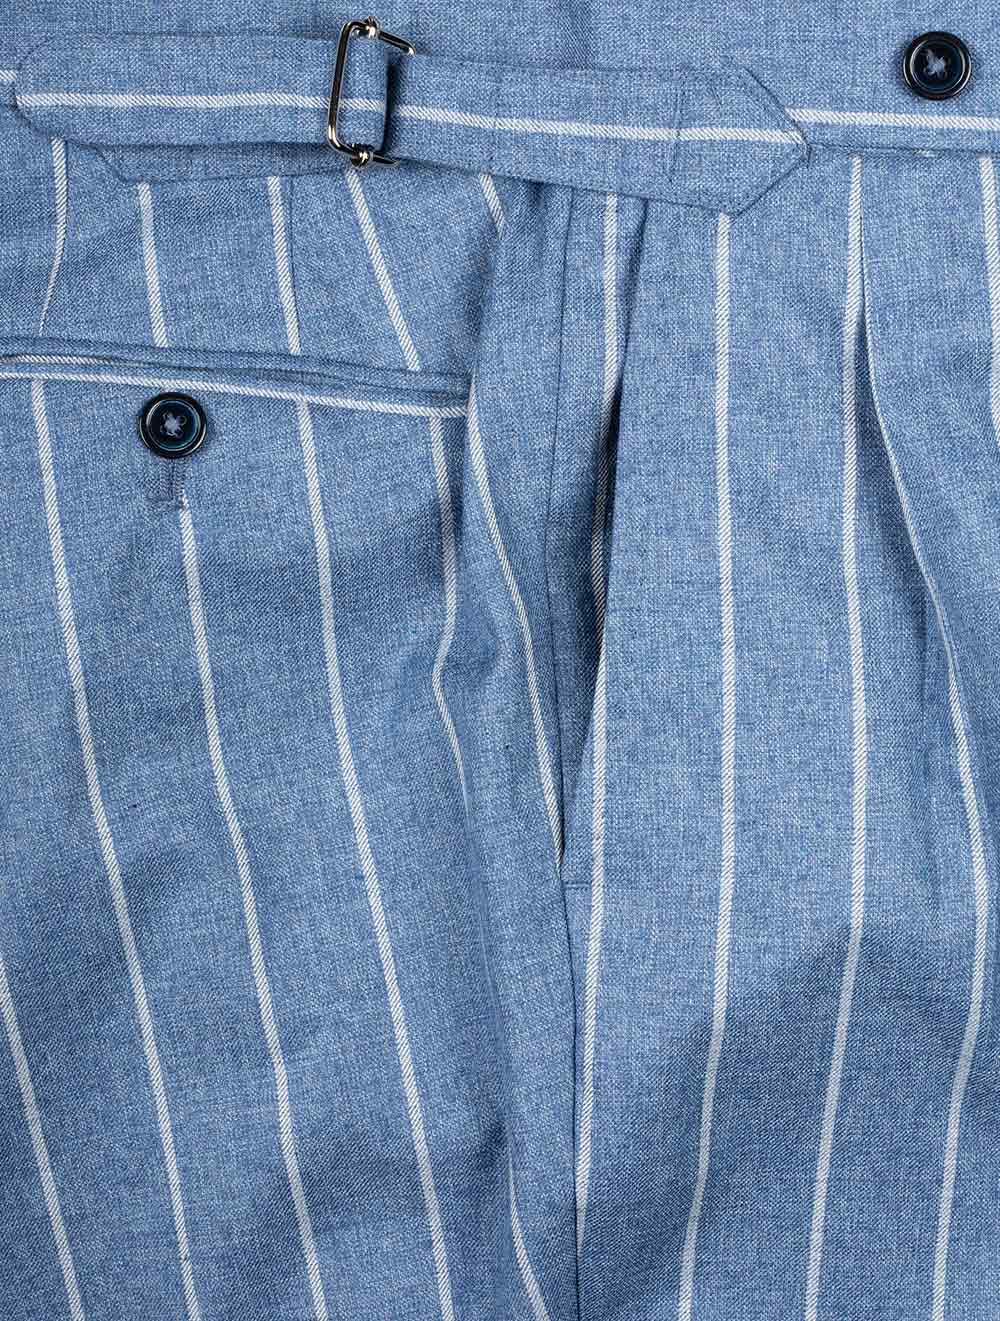 Louis Copeland Stripe Wool Cotton Suit Blue 2 Piece 2 Button Soft Shoulder Peaked Lapel Flap Pockets 5